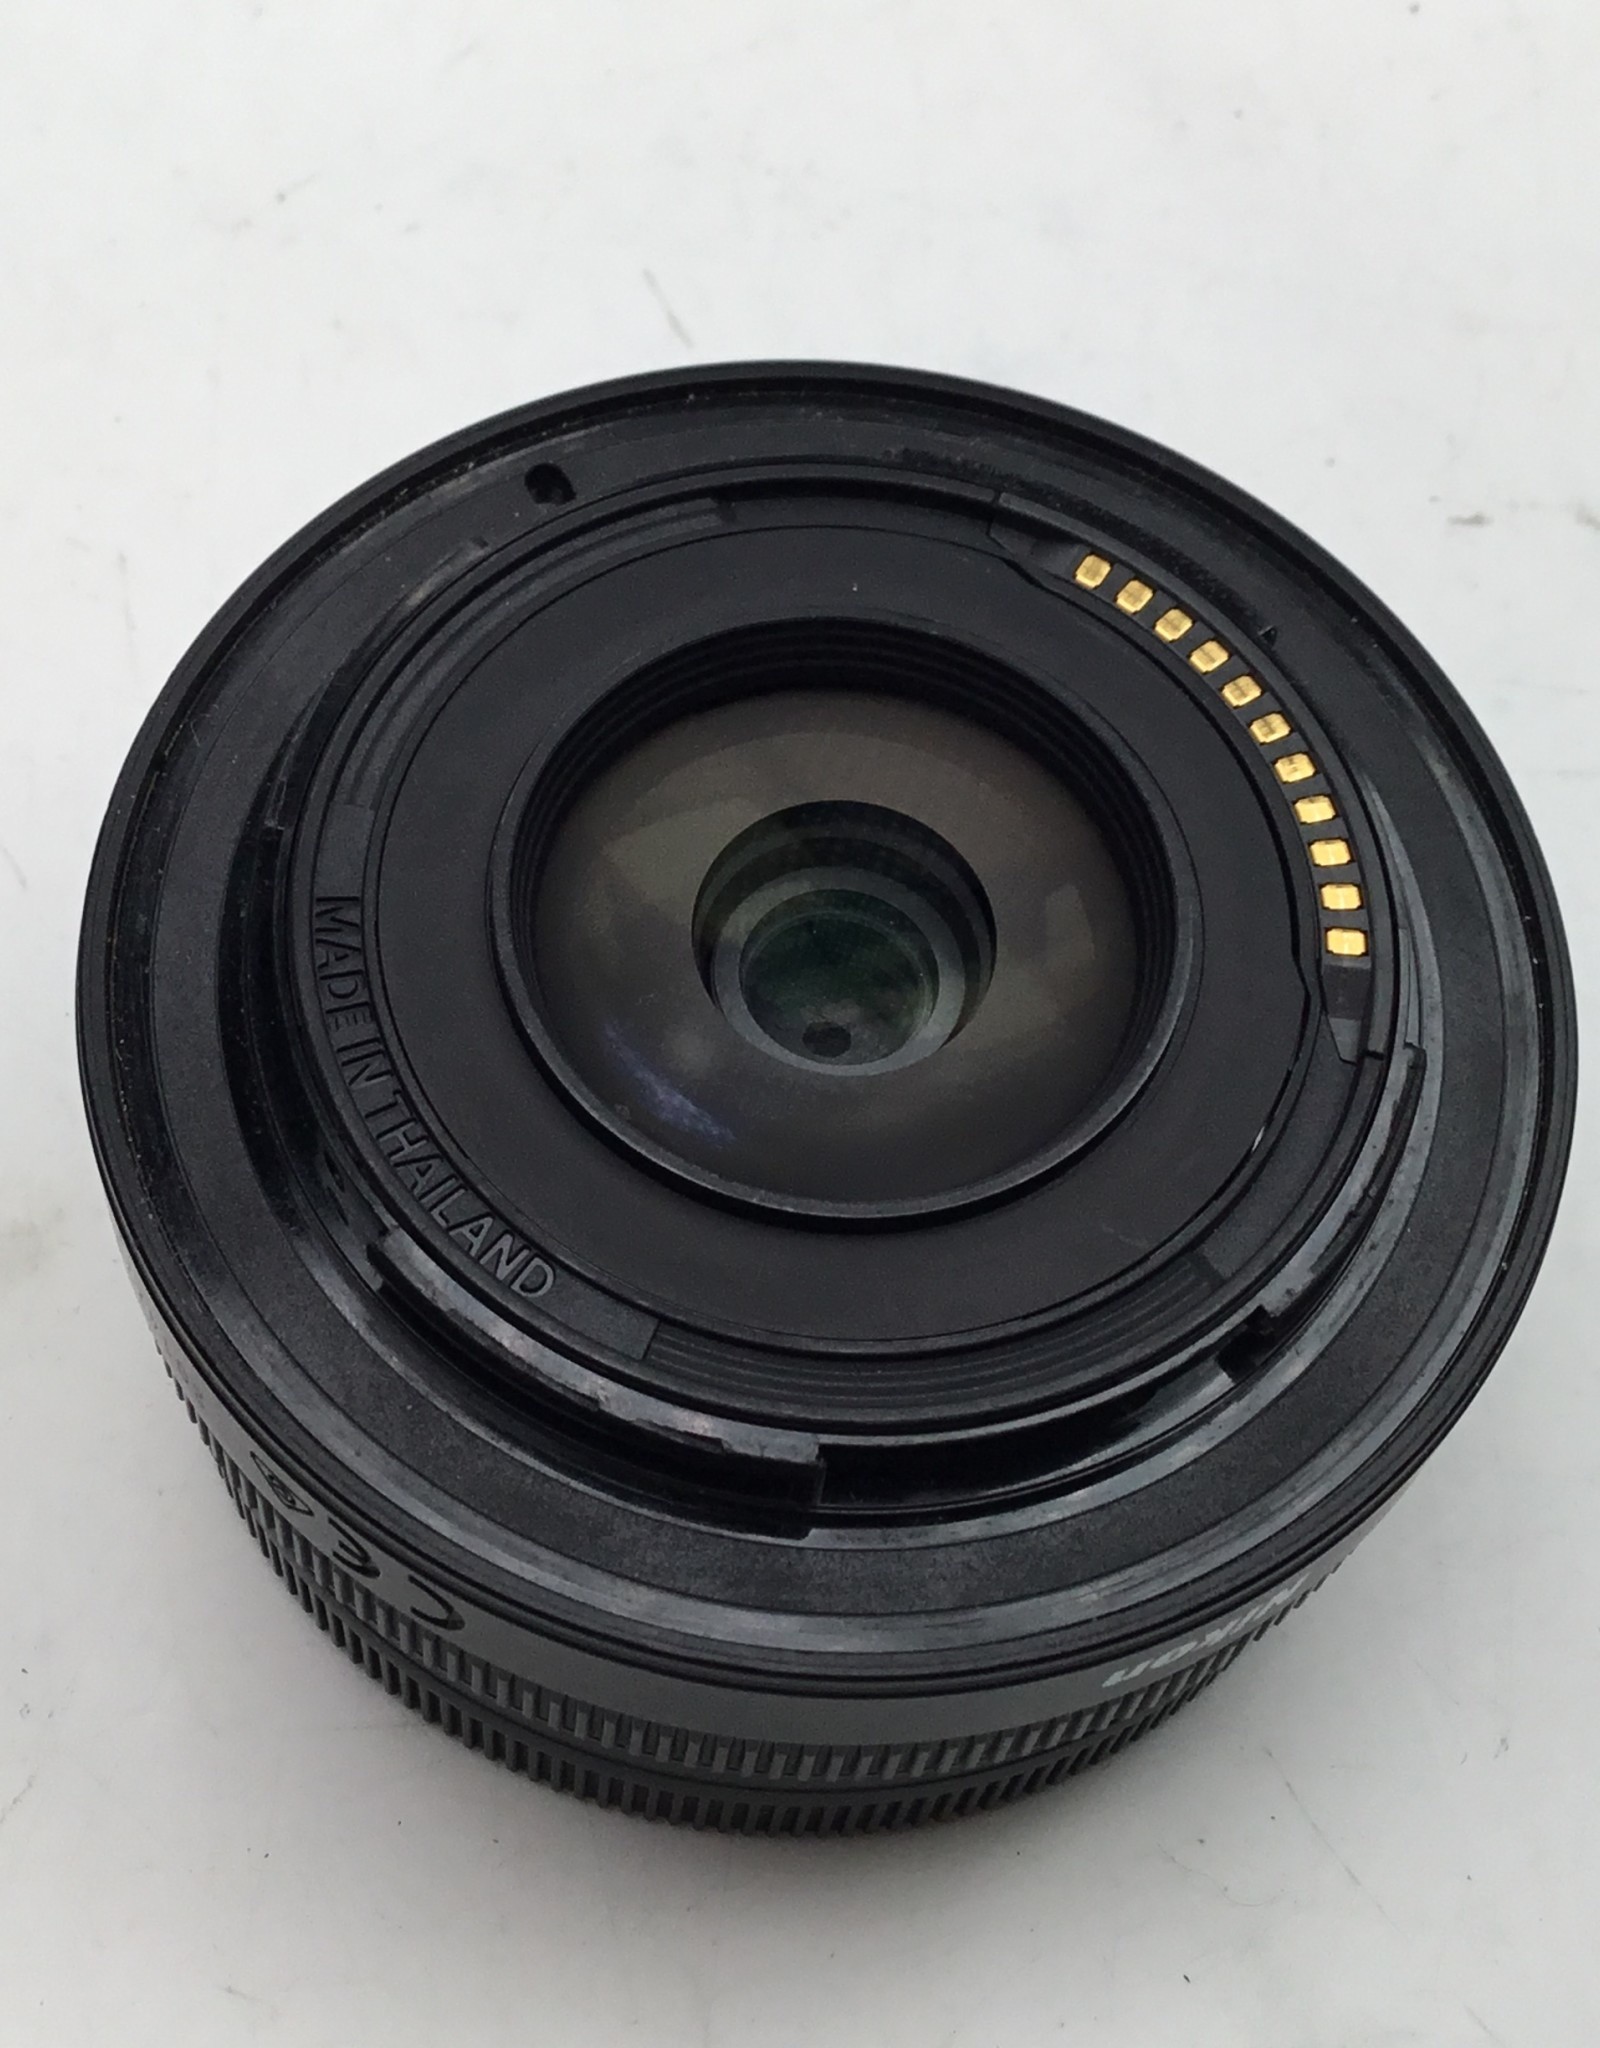 NIKON Nikon Z Nikkor DX 16-50mm f3.5-5.6 VR Lens Used Good